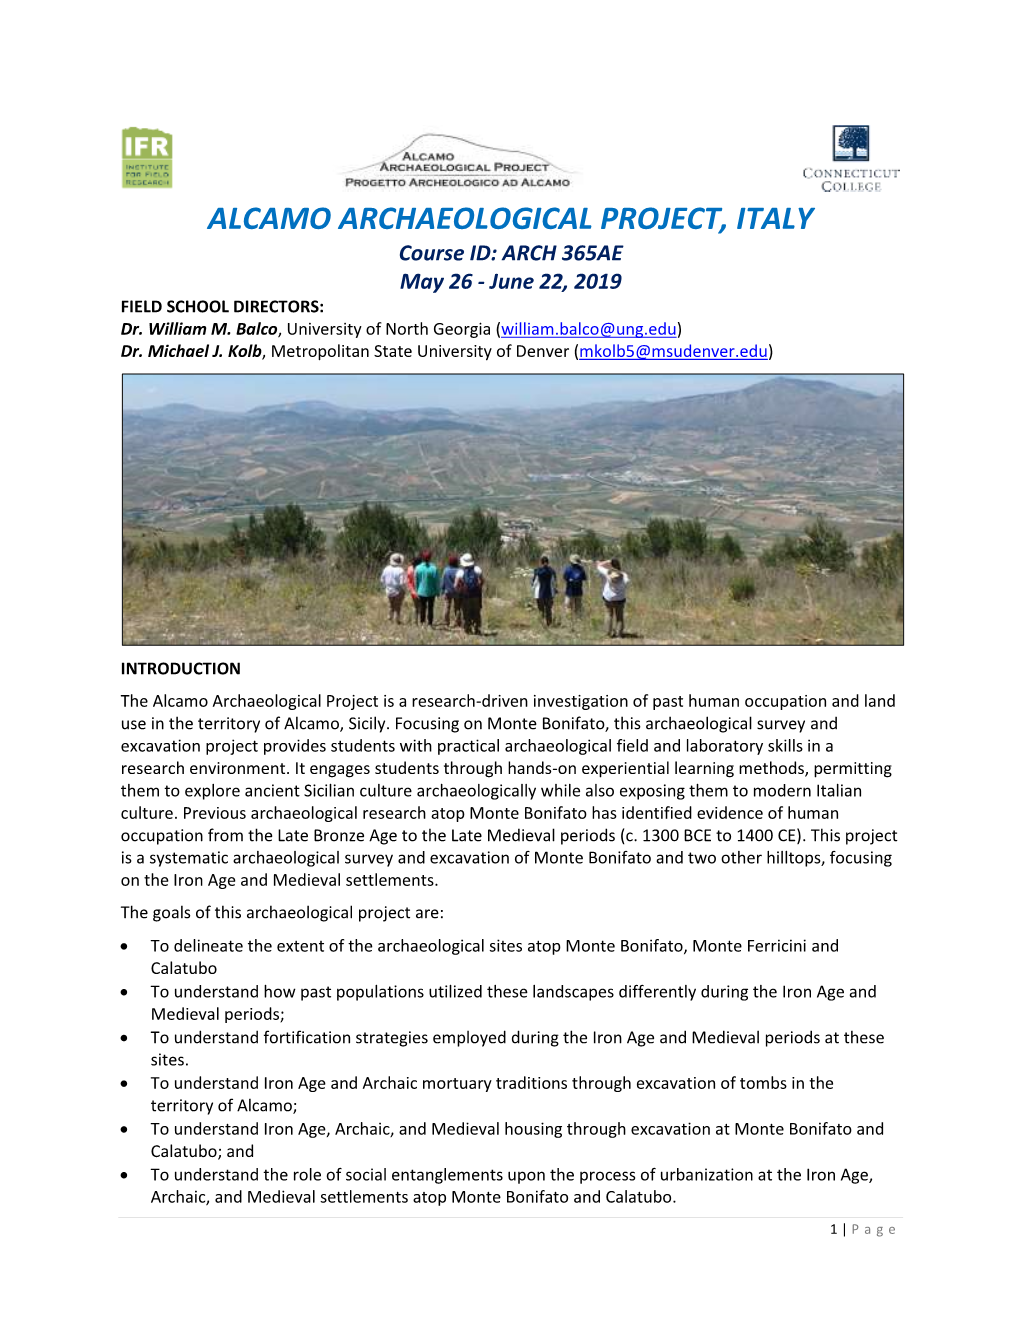 Ucla Archaeology Field School